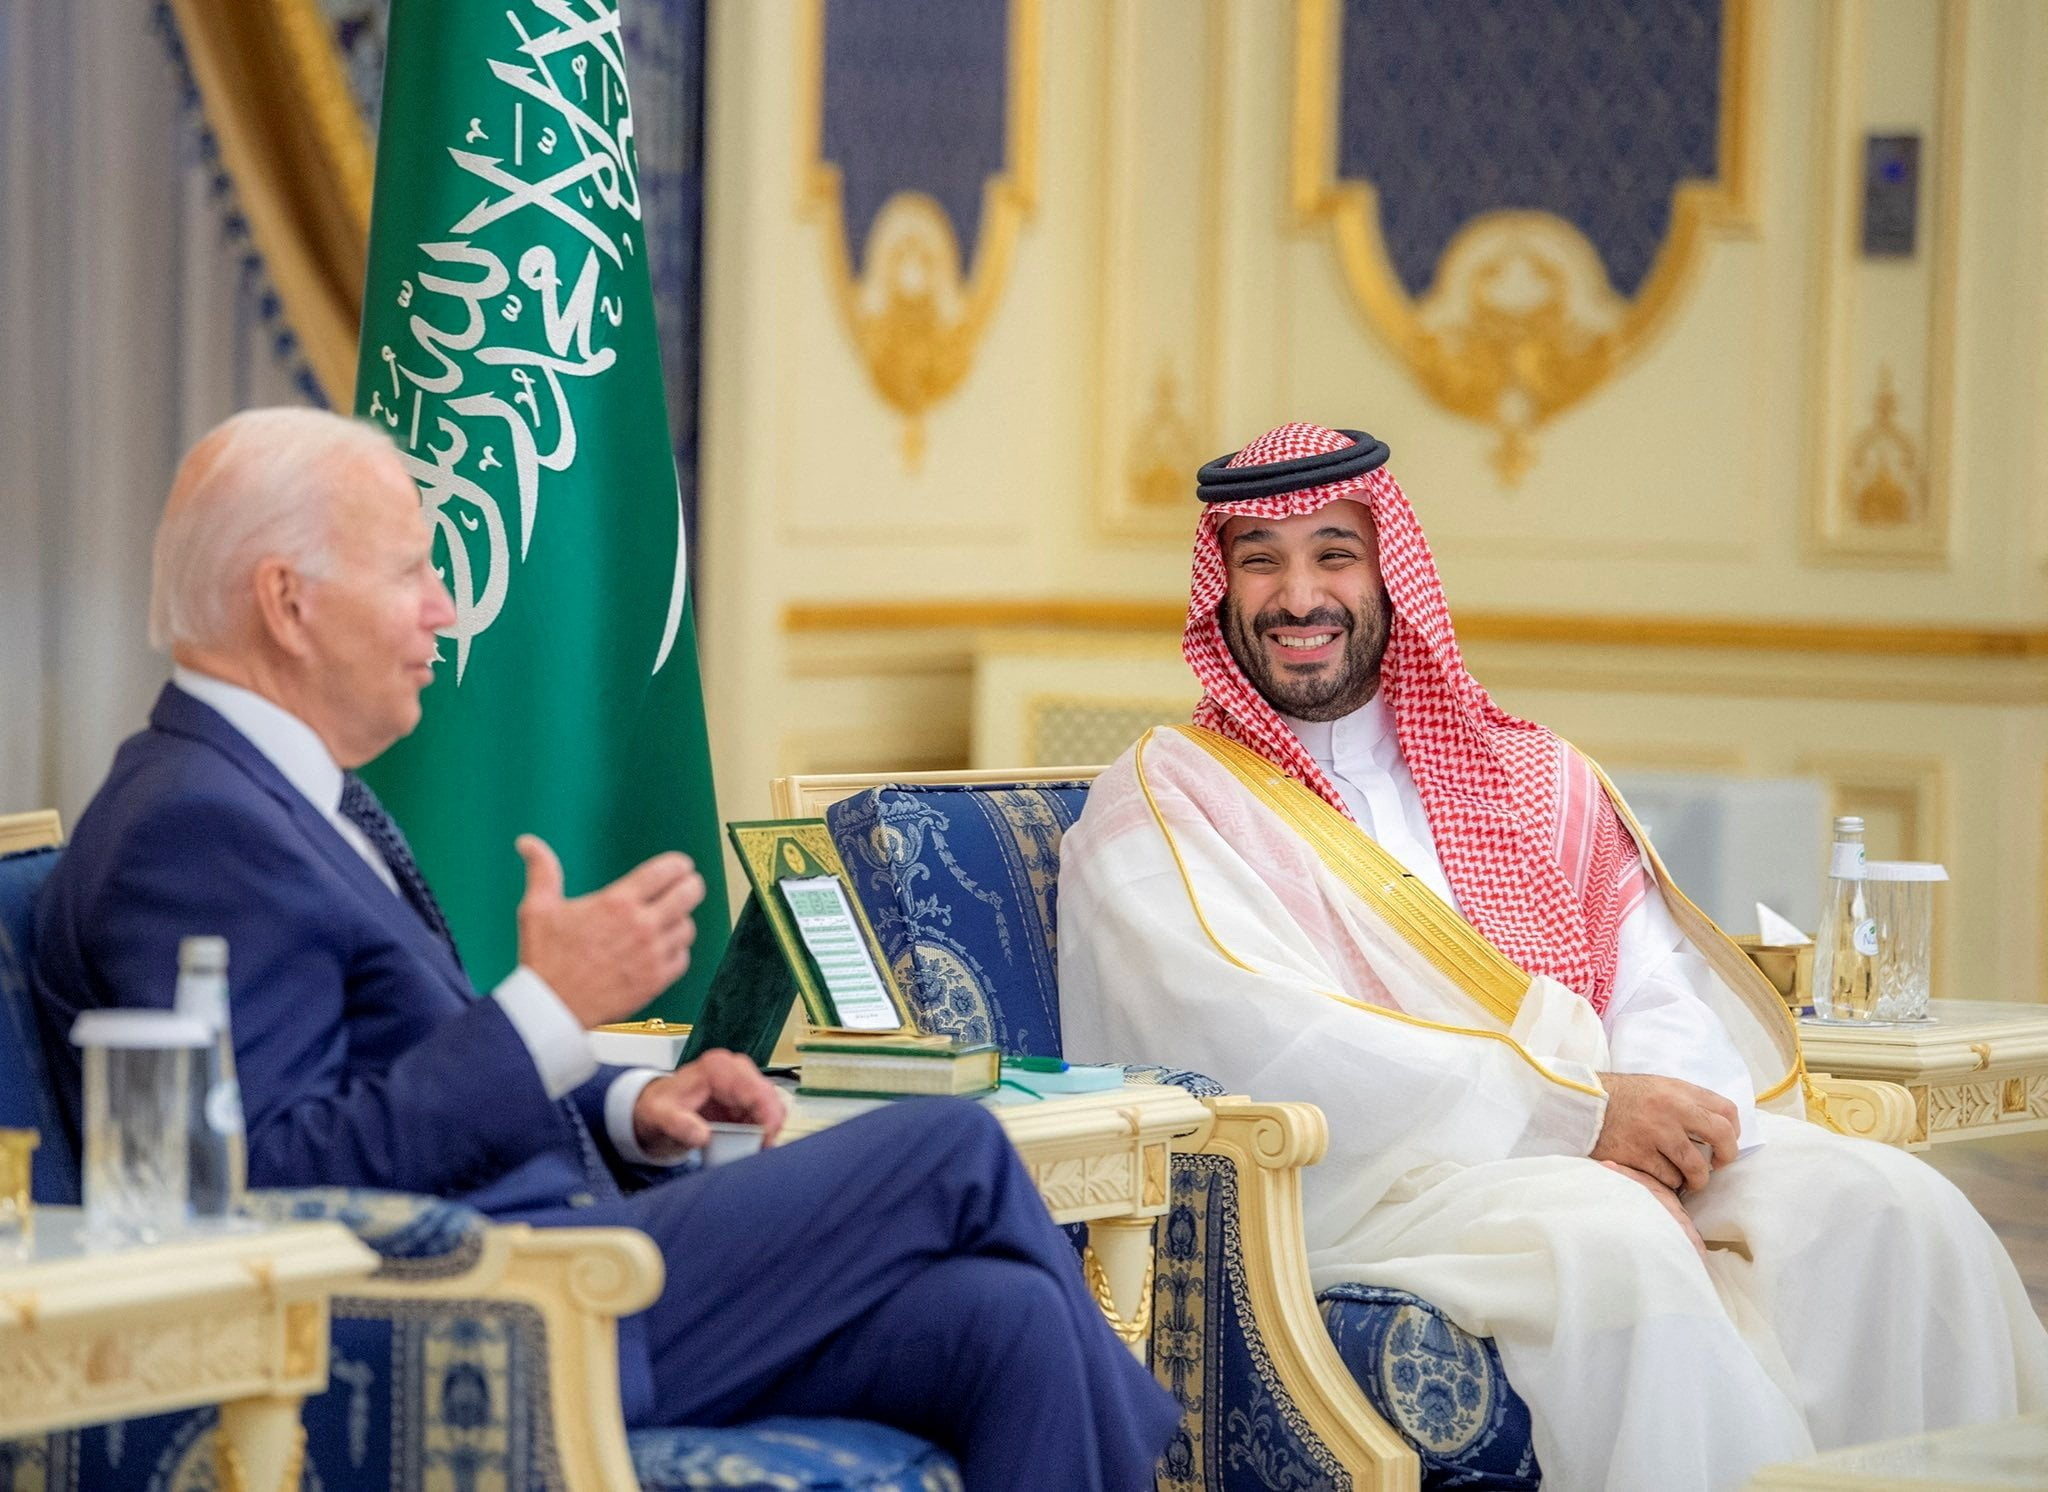 Mohammed bin Salman y Biden